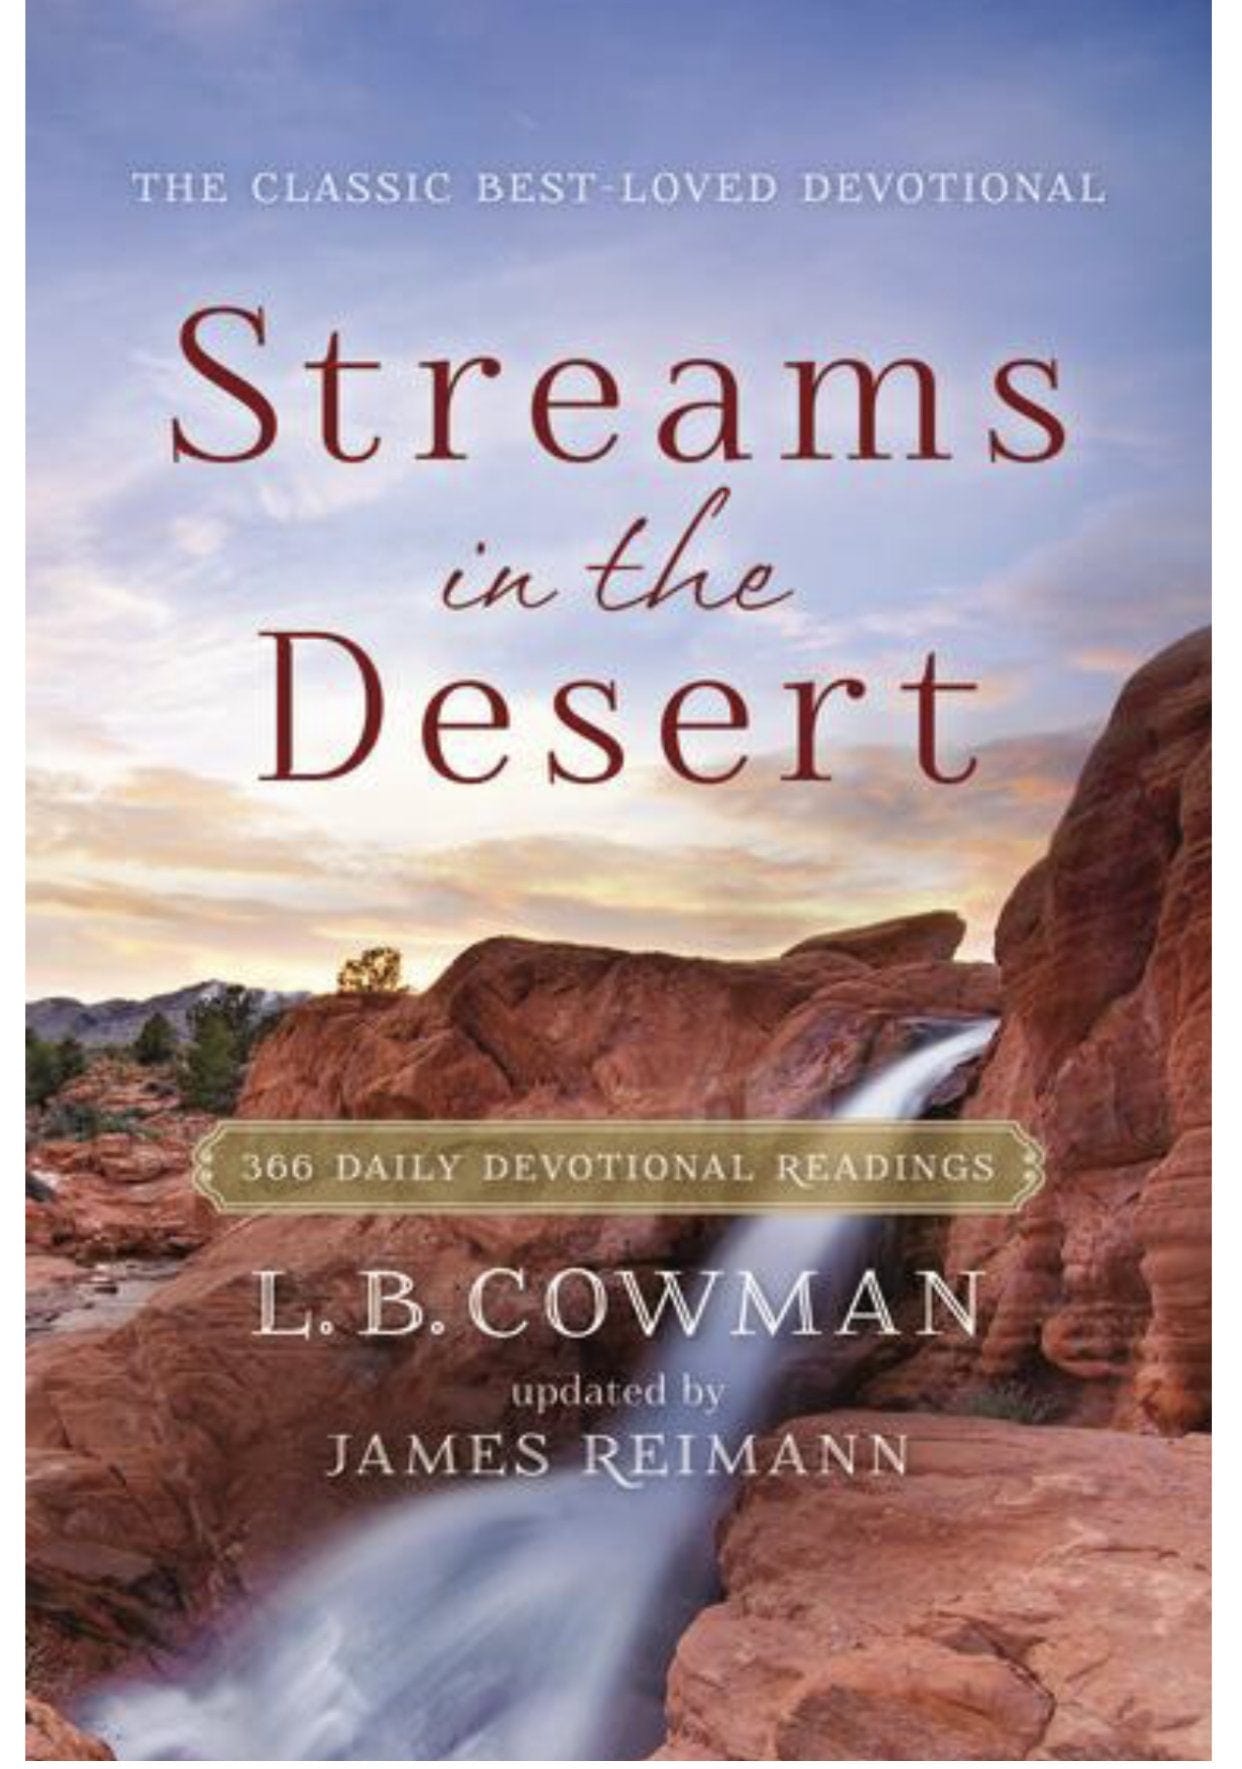 Streams in the Desert Devotional Harper Collins Press Books